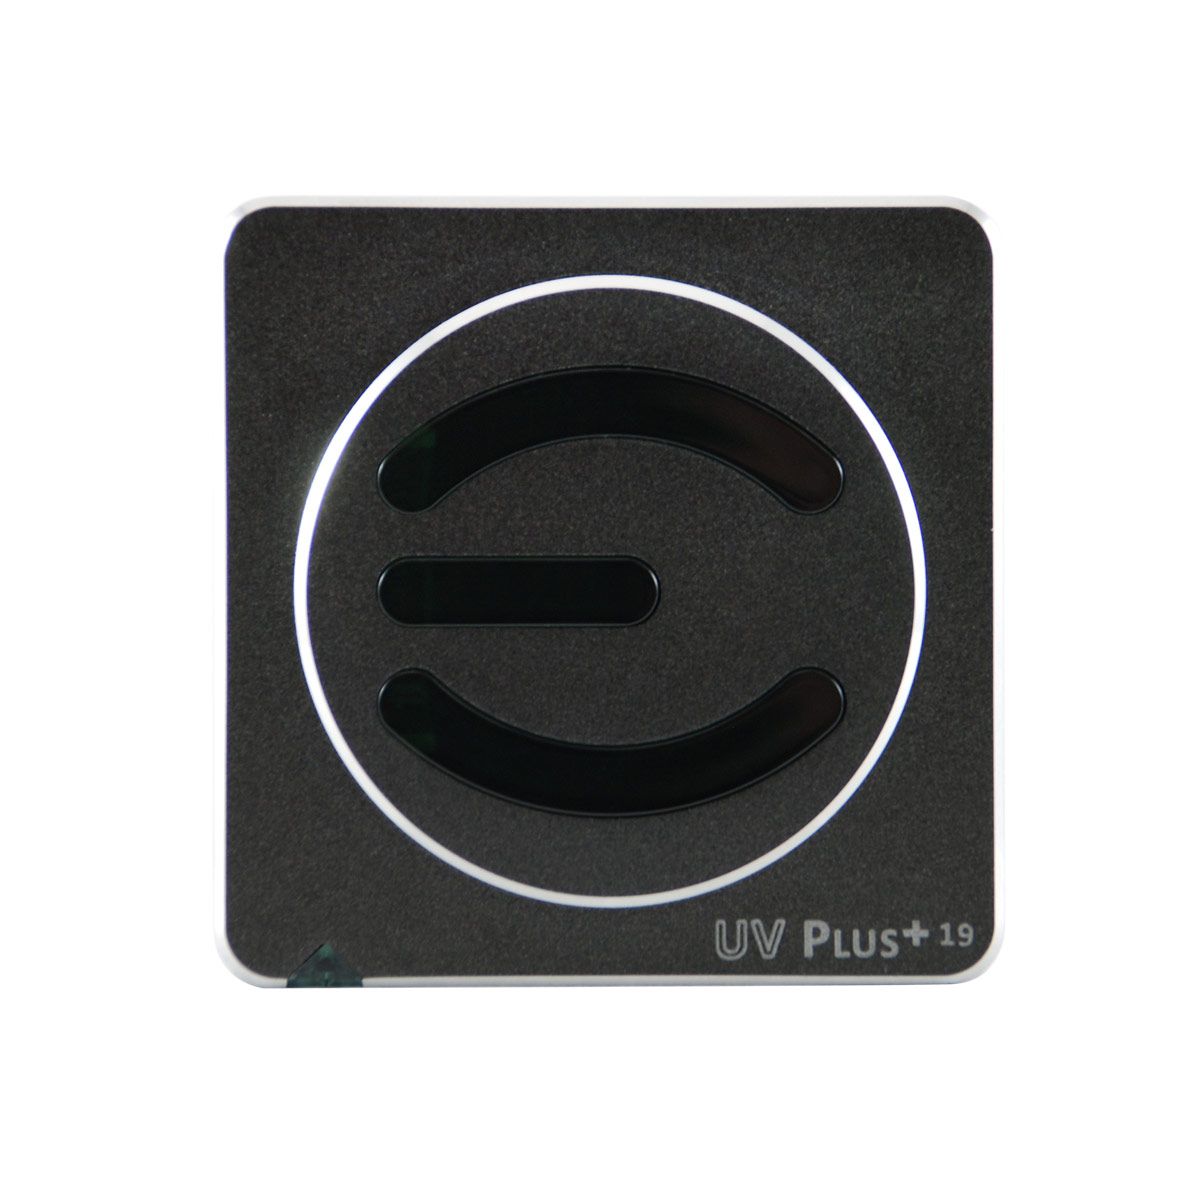   video adapter uv19 usb vga display adapter part number 100 u2 uv19 tr